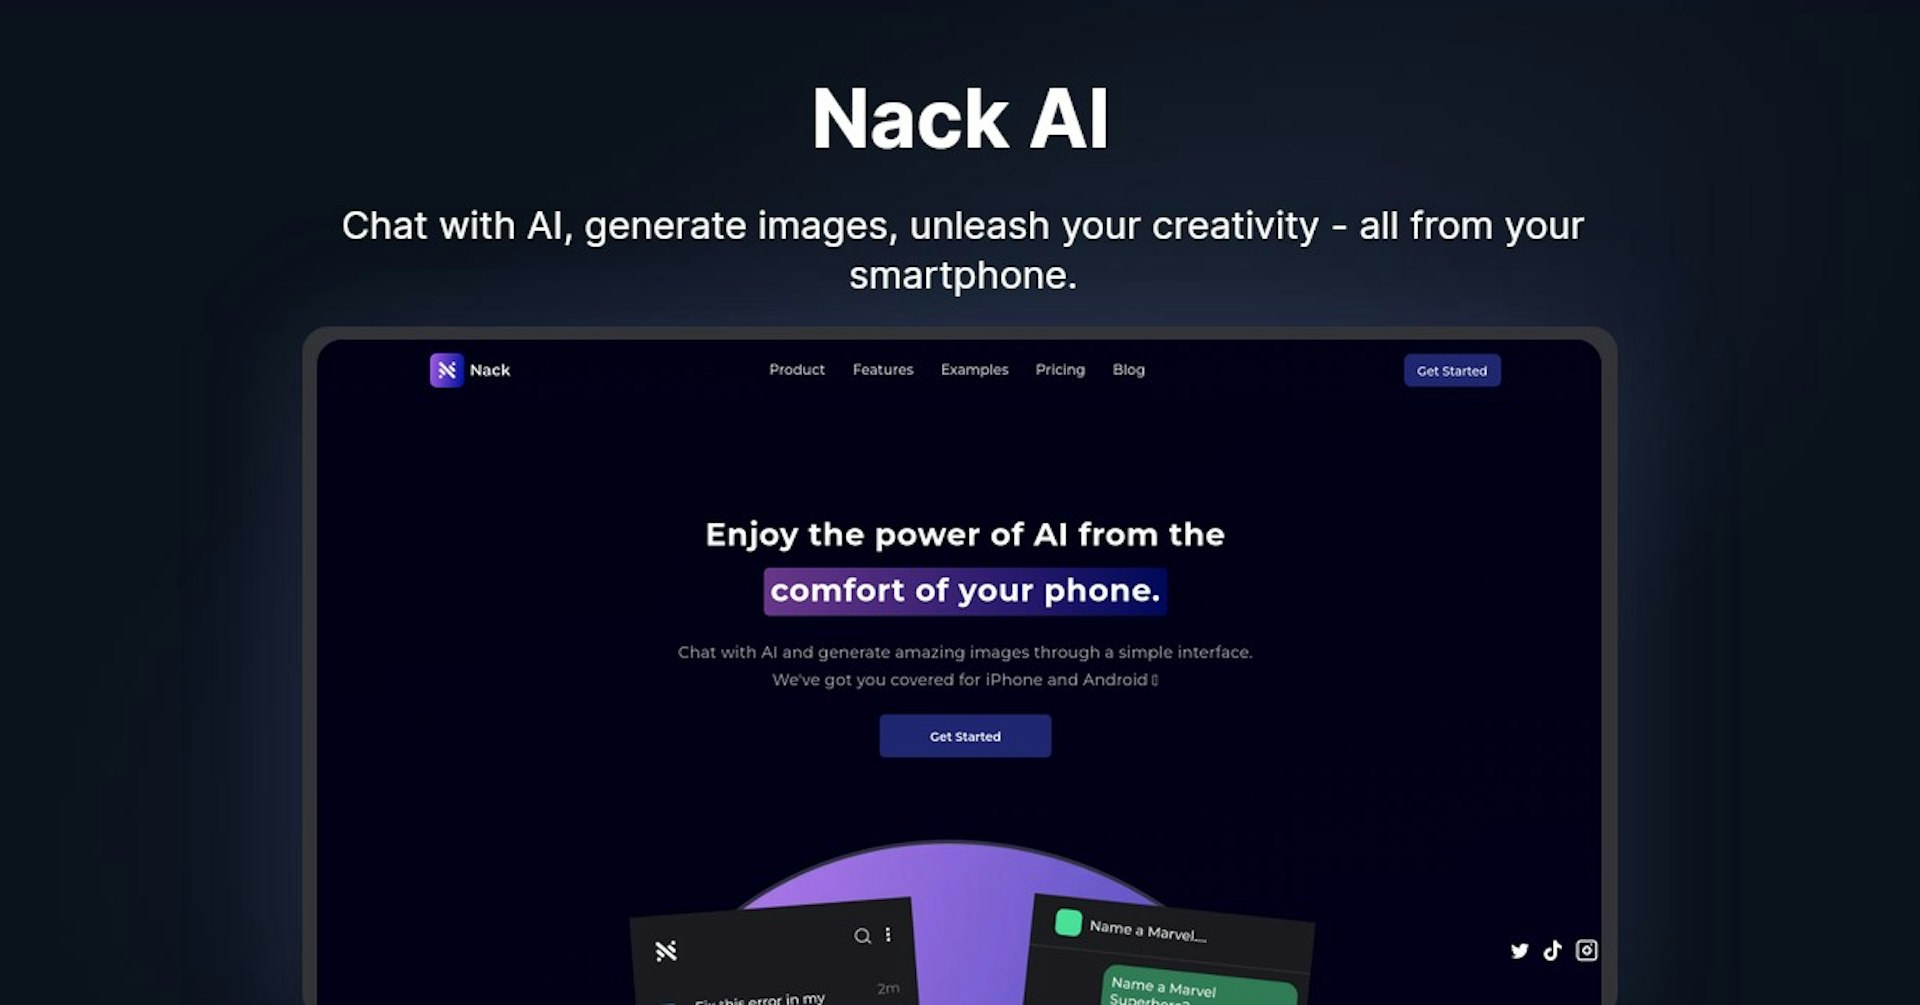 Nack AI